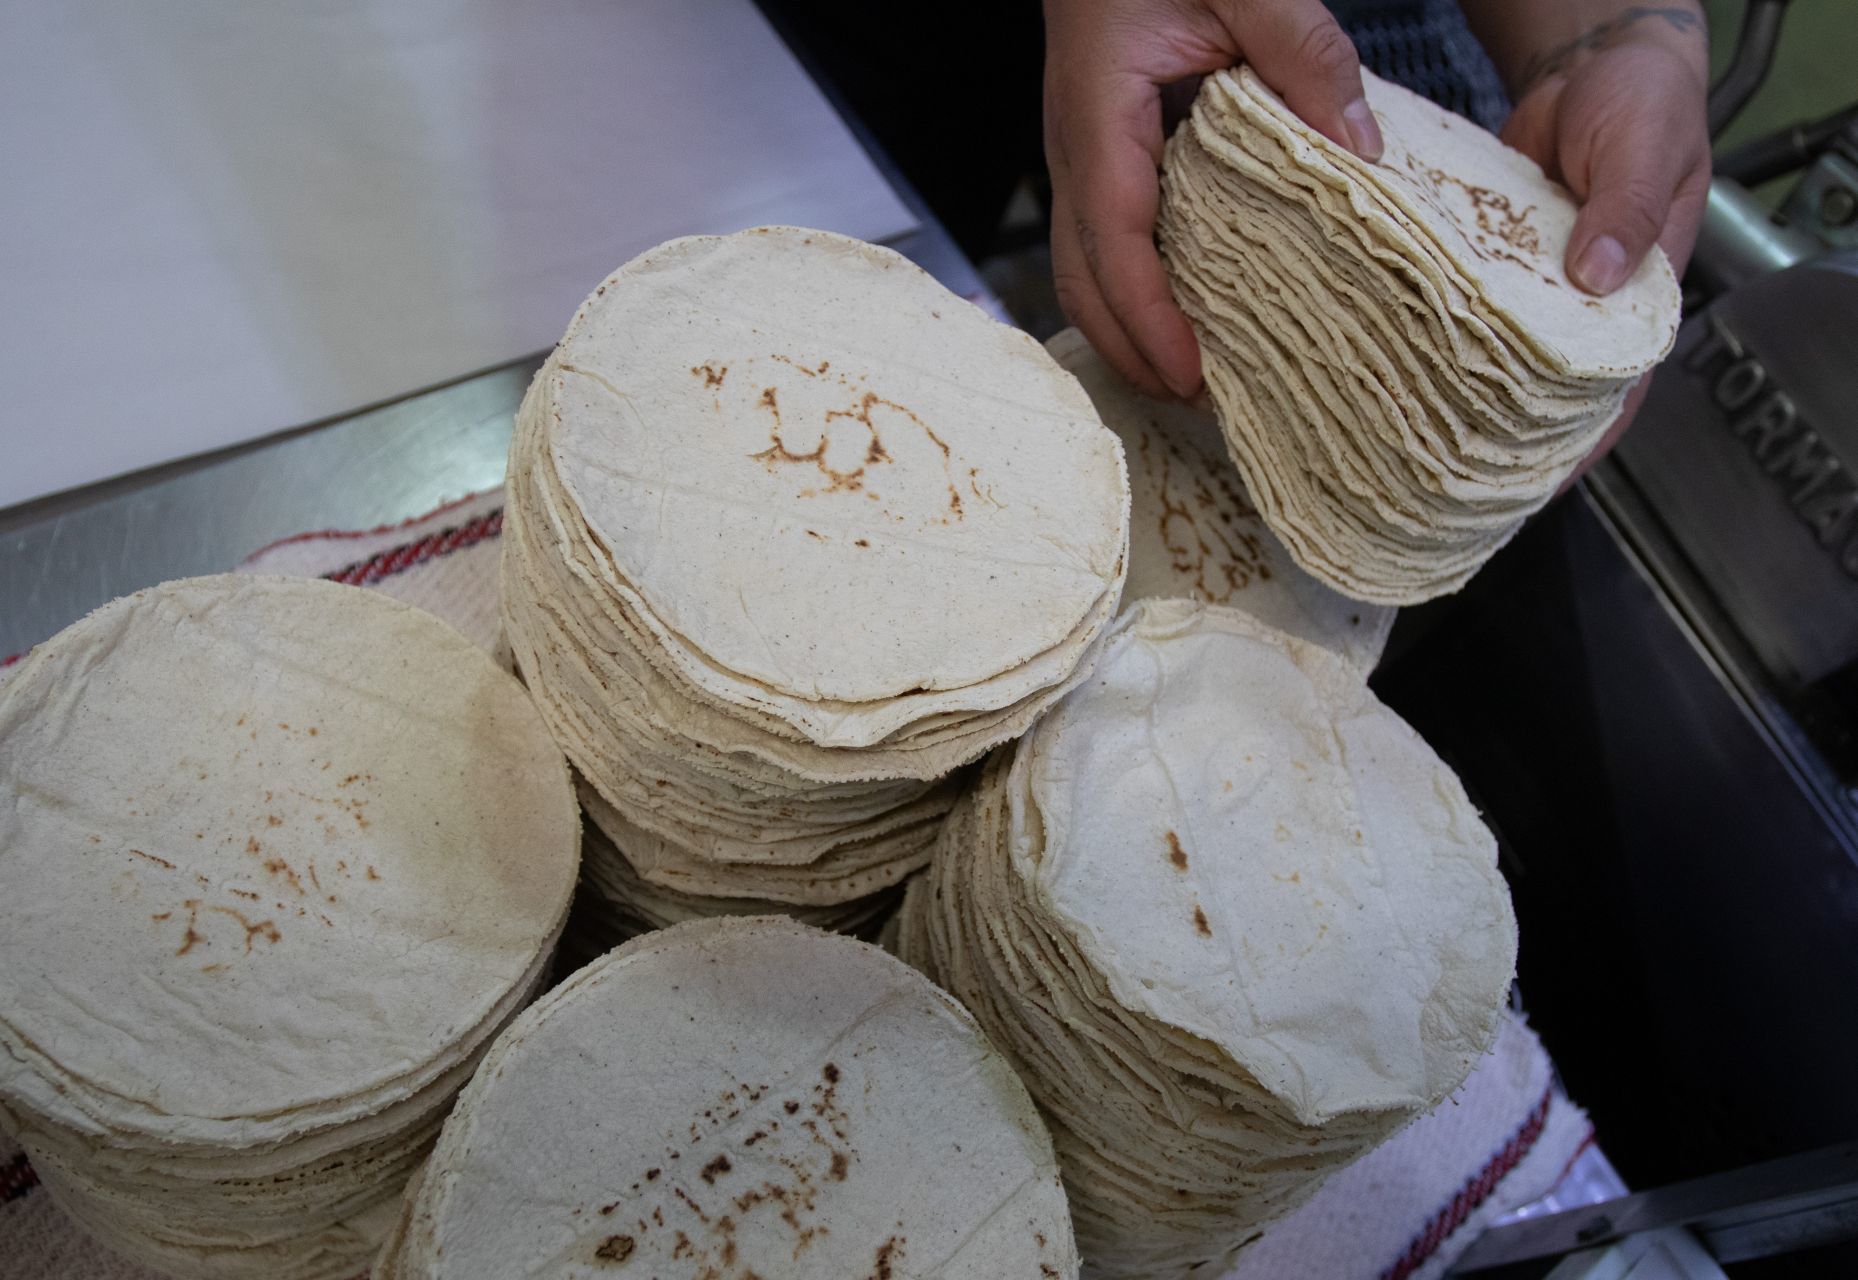 Sube el precio de la tortilla en México